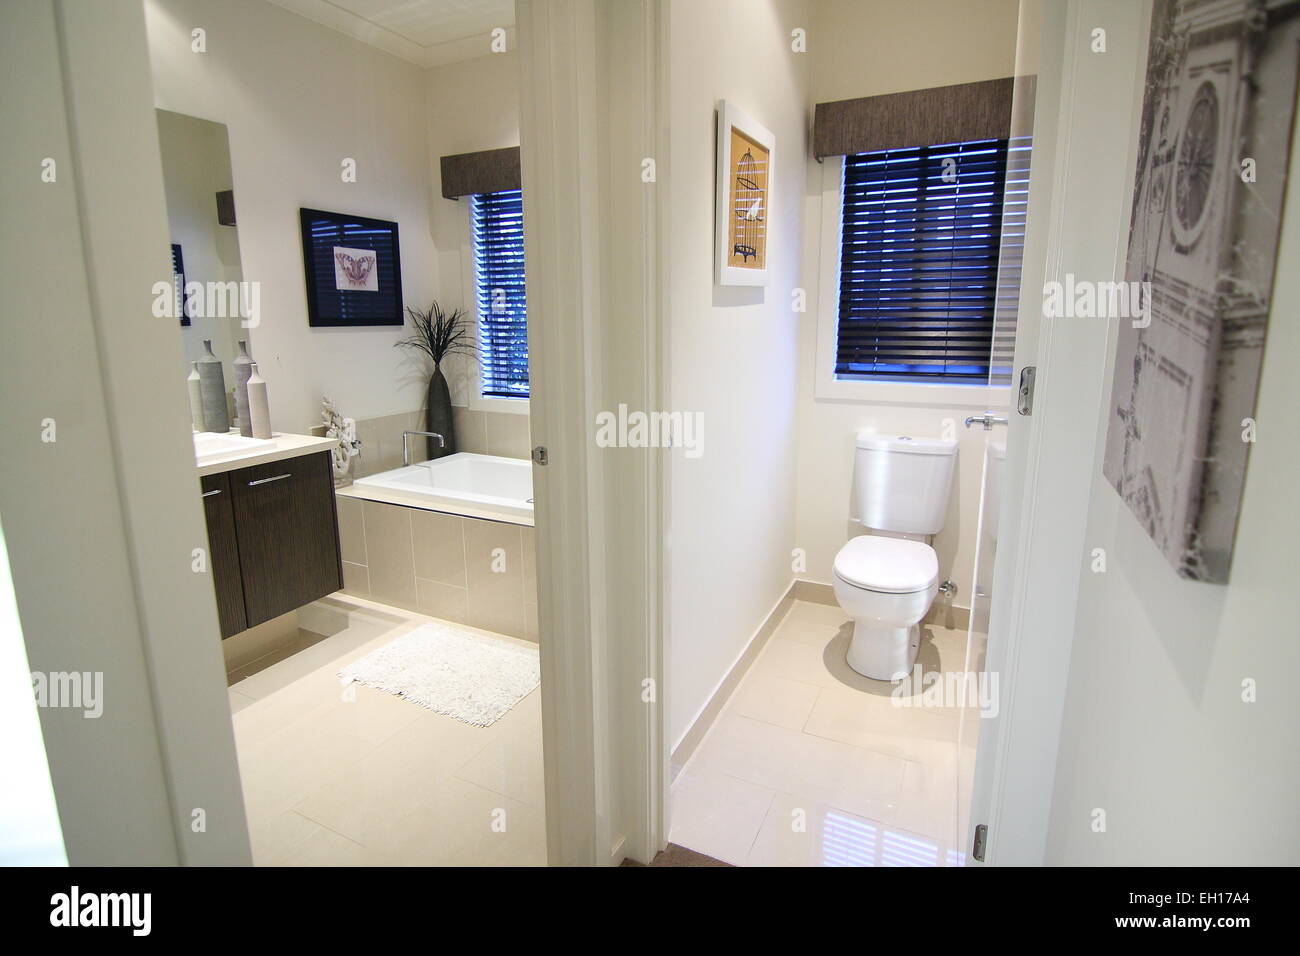 Badezimmer und Separate Toilette Stockfotos und -bilder Kaufen - Alamy